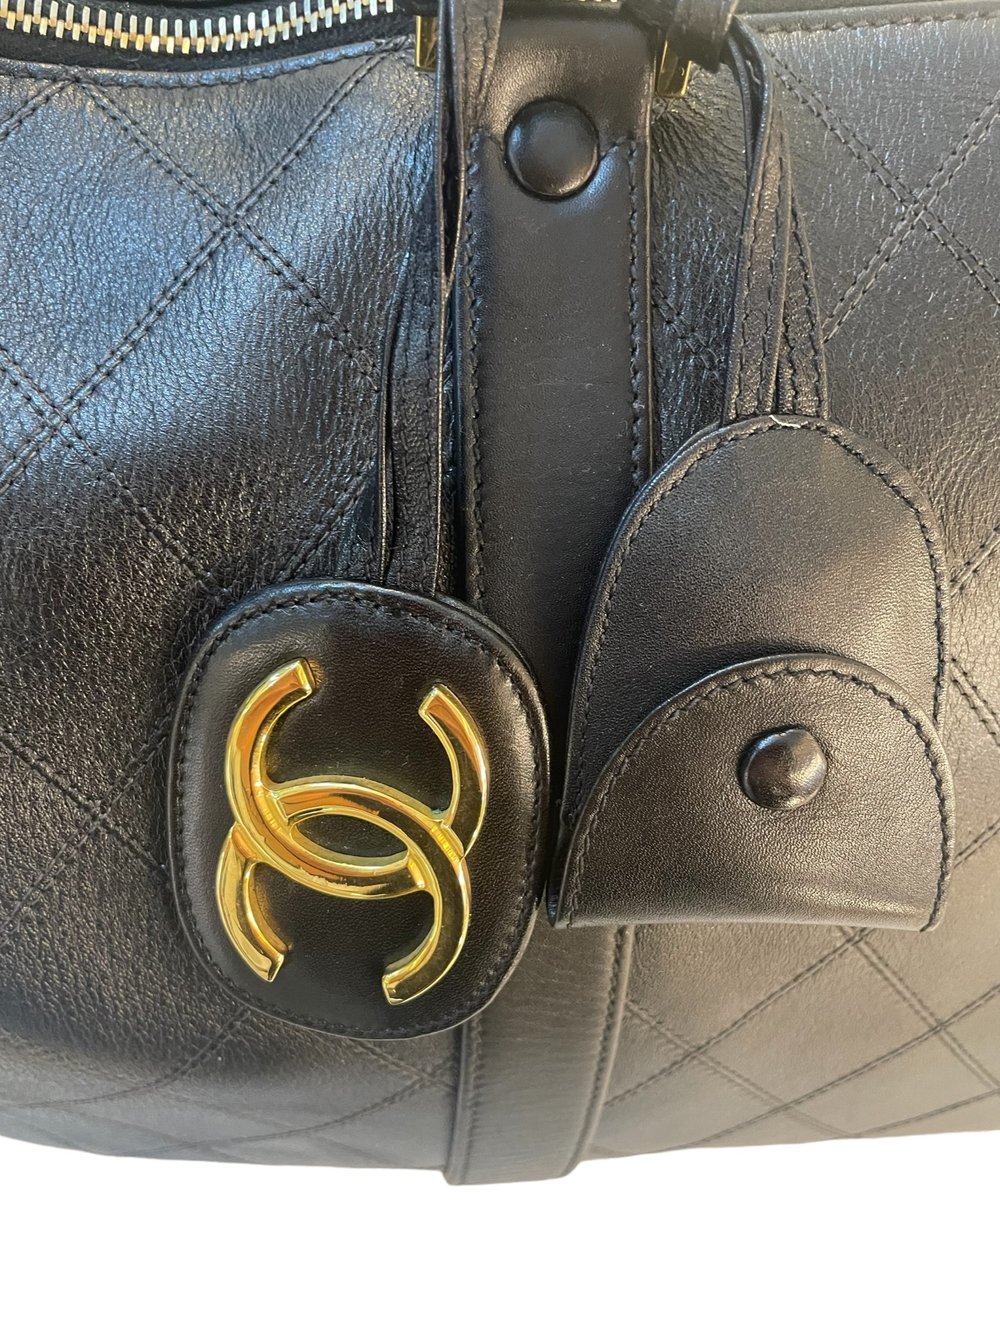 Chanel Vintage Speedy Bag - For Sale on 1stDibs